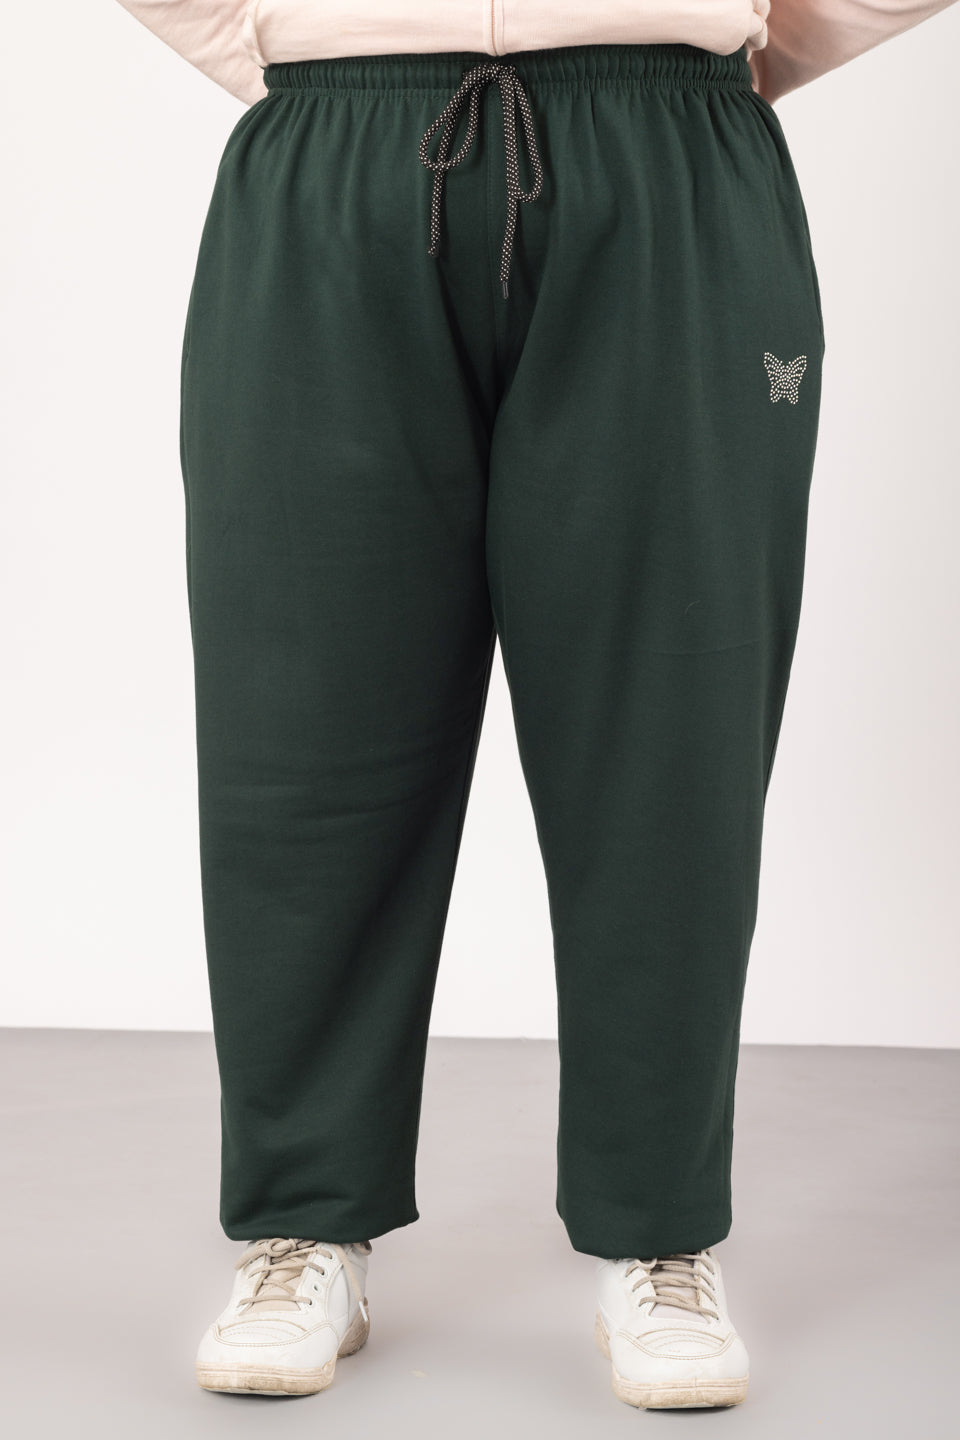 Plus Size Winters Cozy Fleece Track Pants For Women - Bottle Green